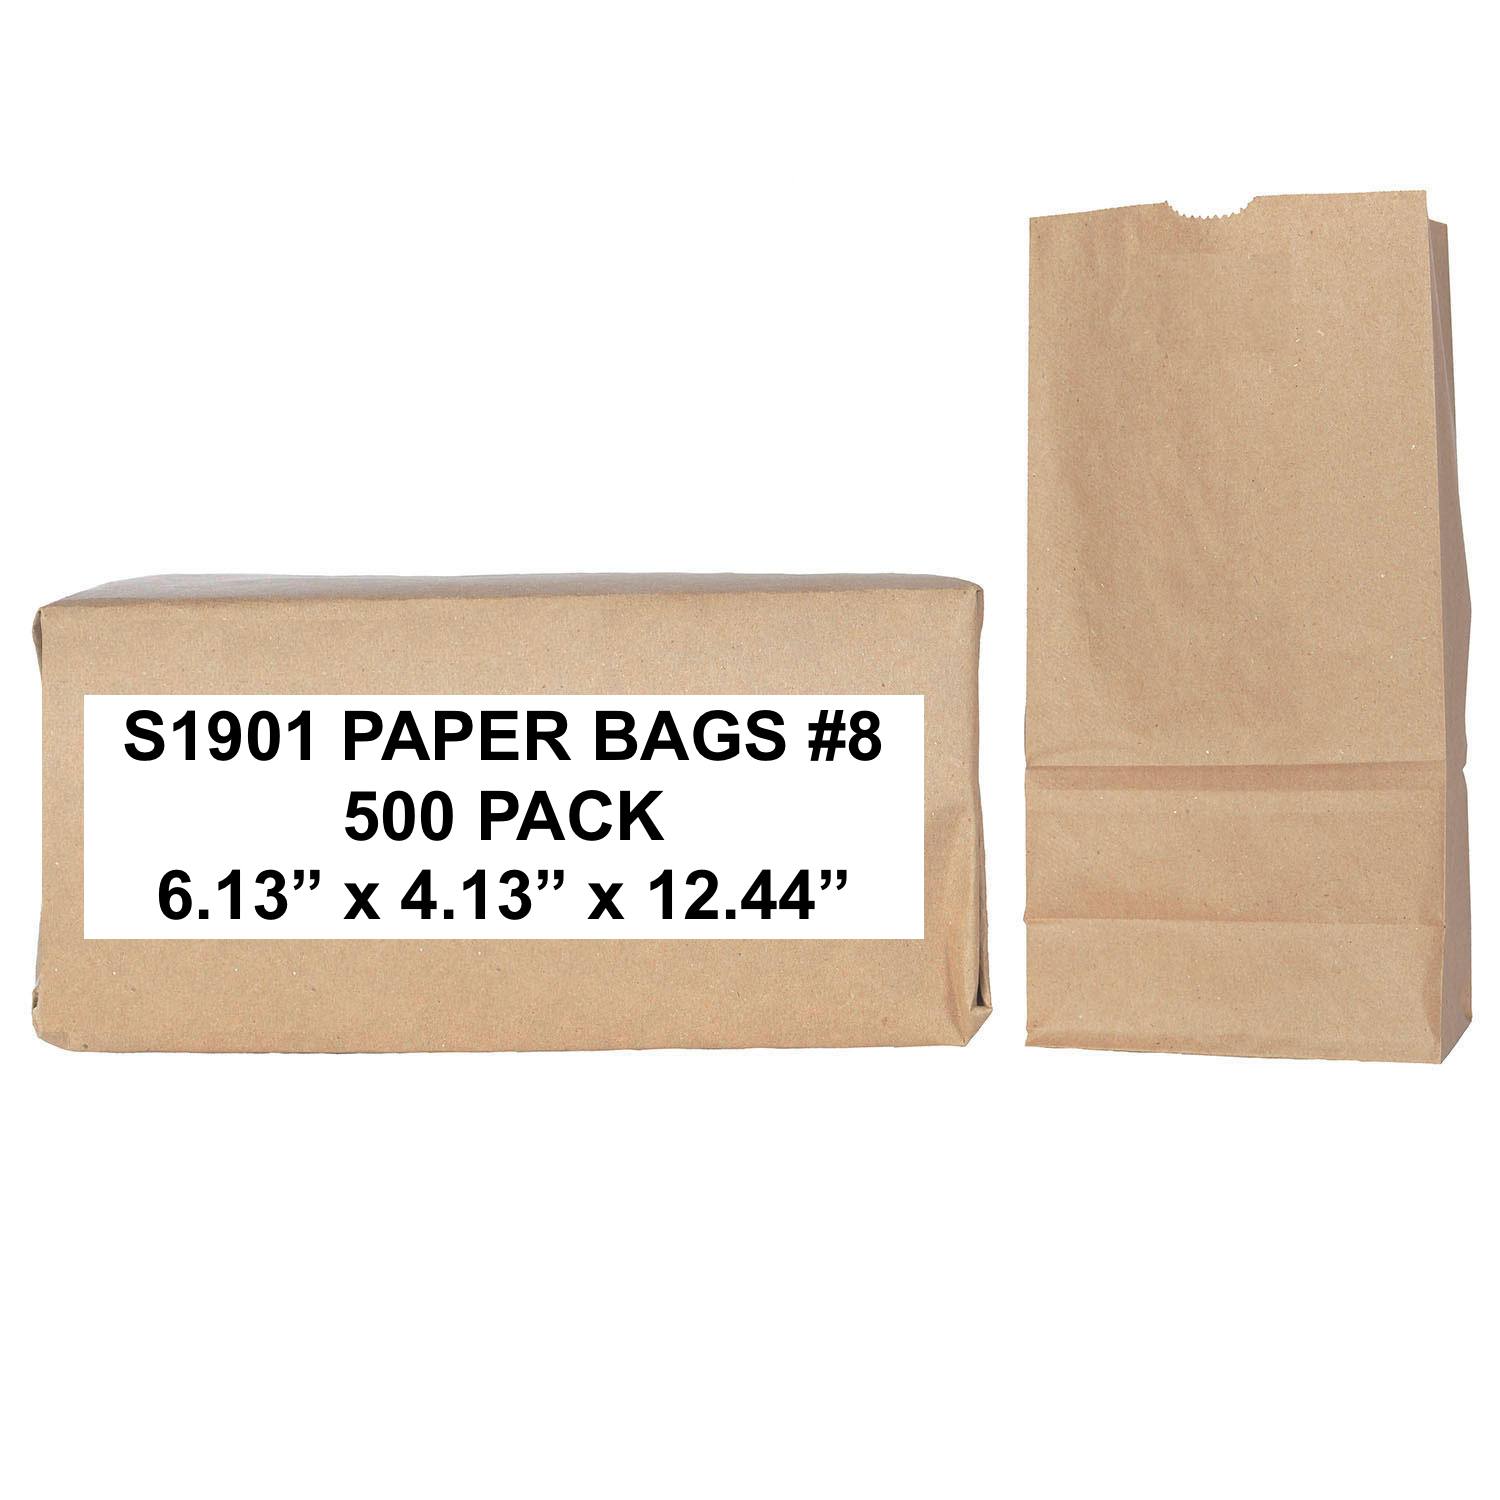 S1901 Brown Paper Bags, Standard Grade, 500 Bags #8